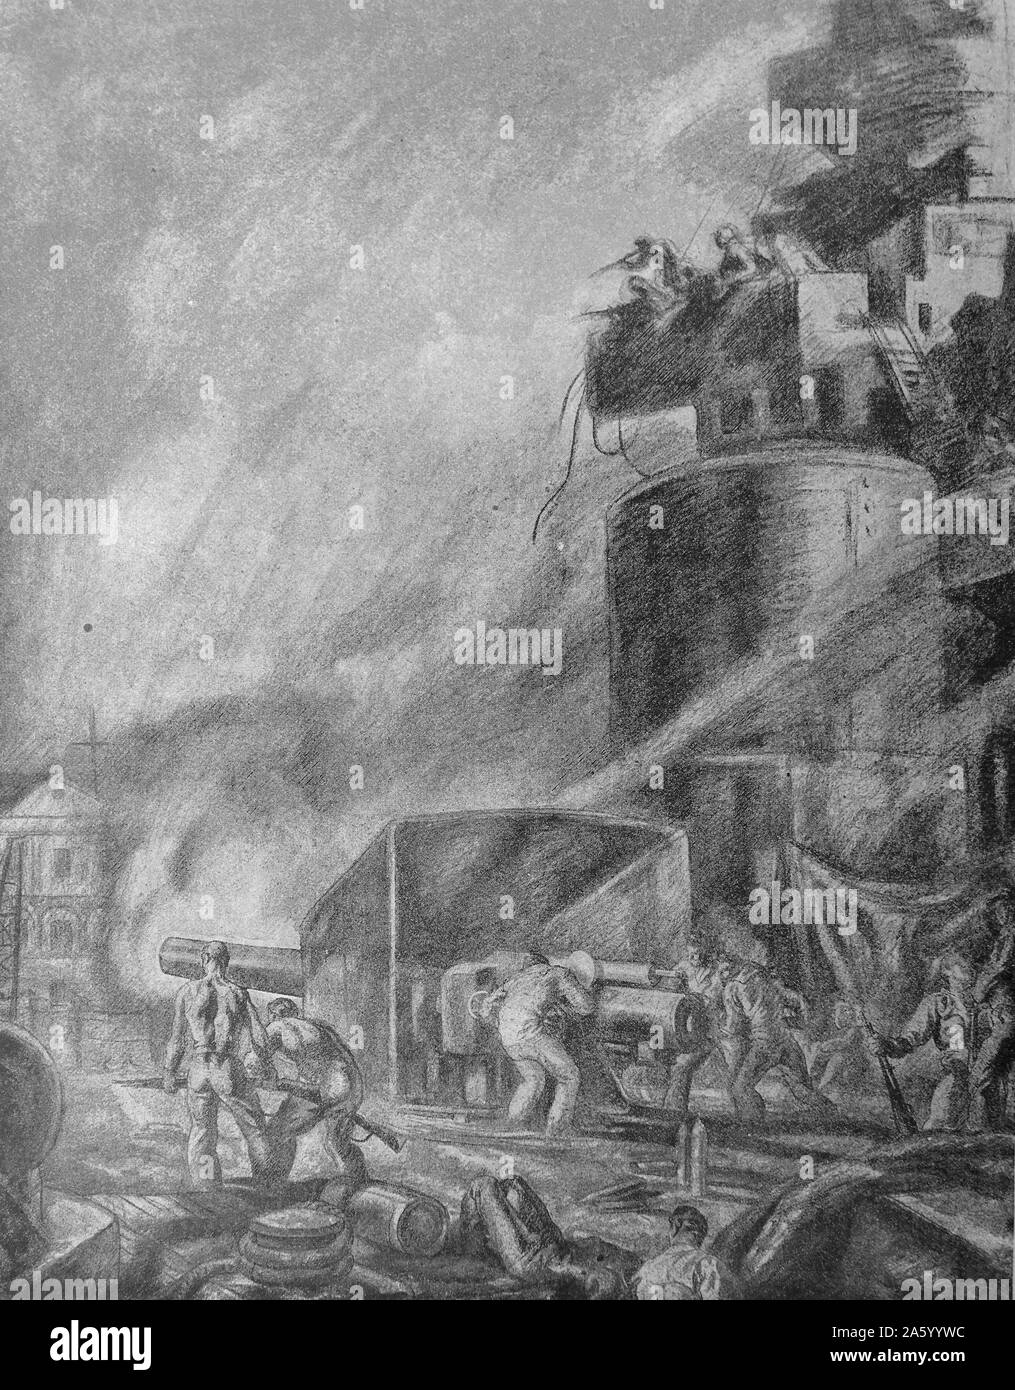 Propaganda-Illustration von Carlos Saenz De Tejada Darstellung republikanischen Segler Meuterei auf ein Schlachtschiff während des spanischen Bürgerkriegs. Datiert 1936 Stockfoto